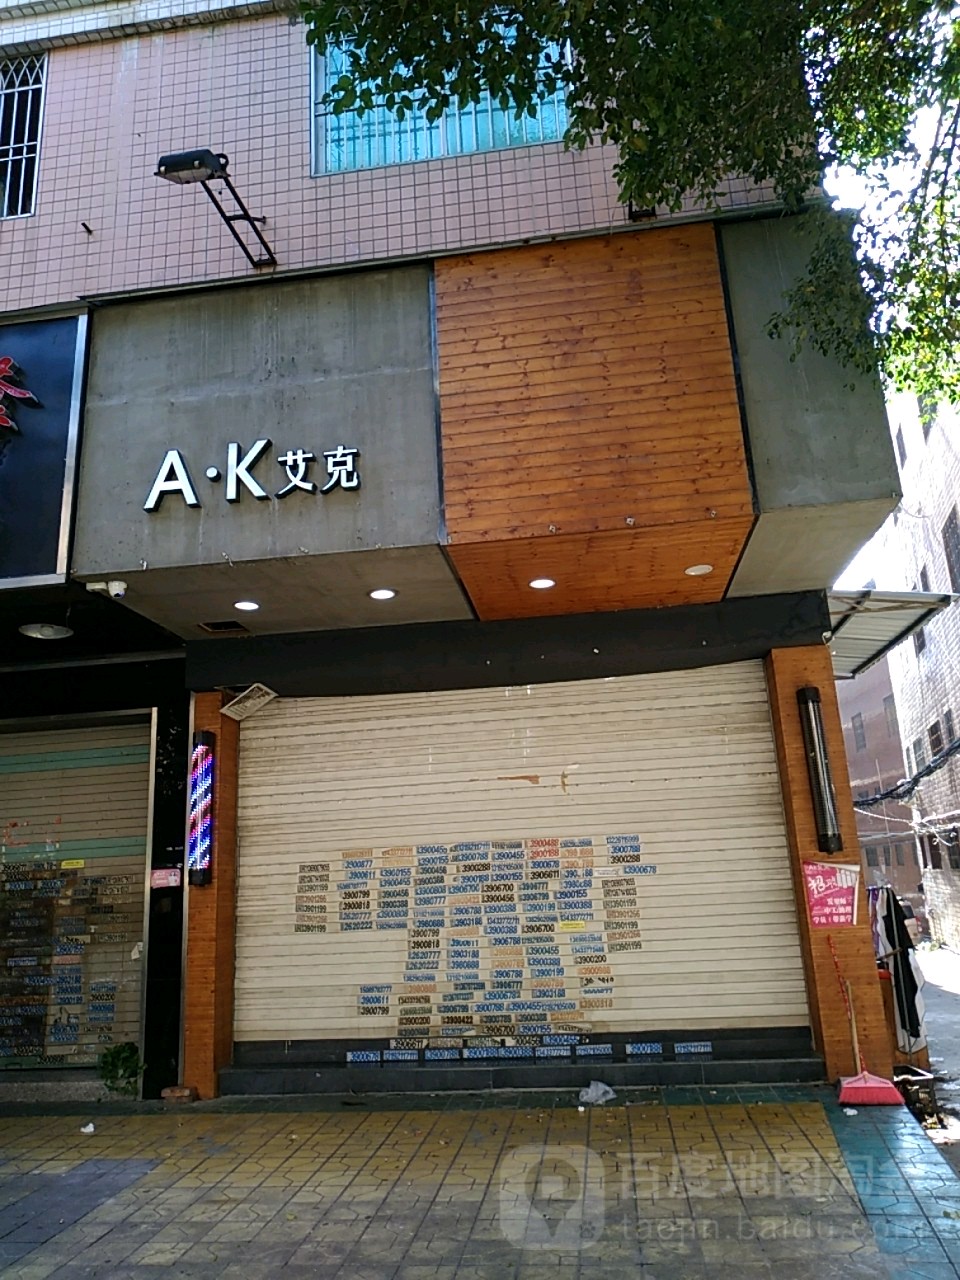 AK艾克(枫溪店)